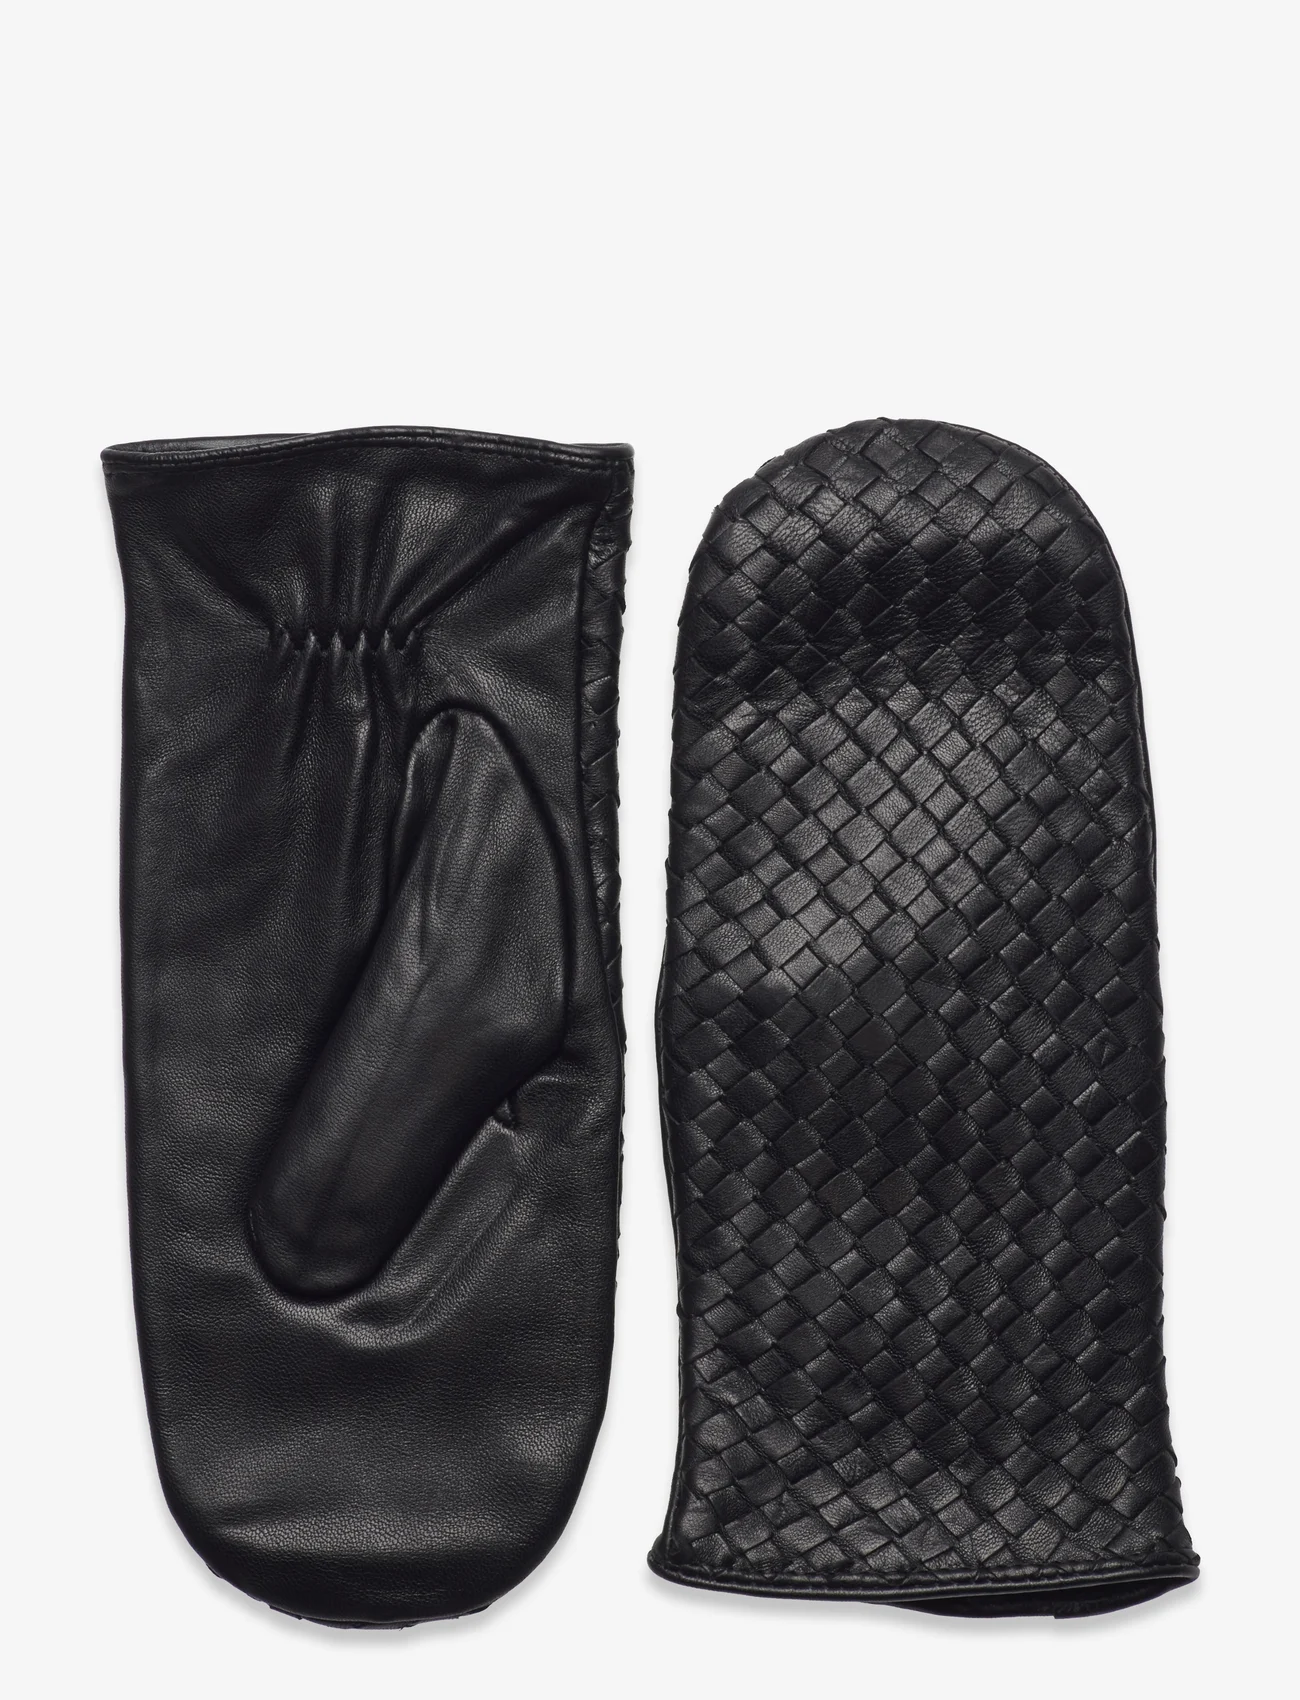 DAY ET - Day Leather Braid Mitten - kumštinės pirštinės - black - 0